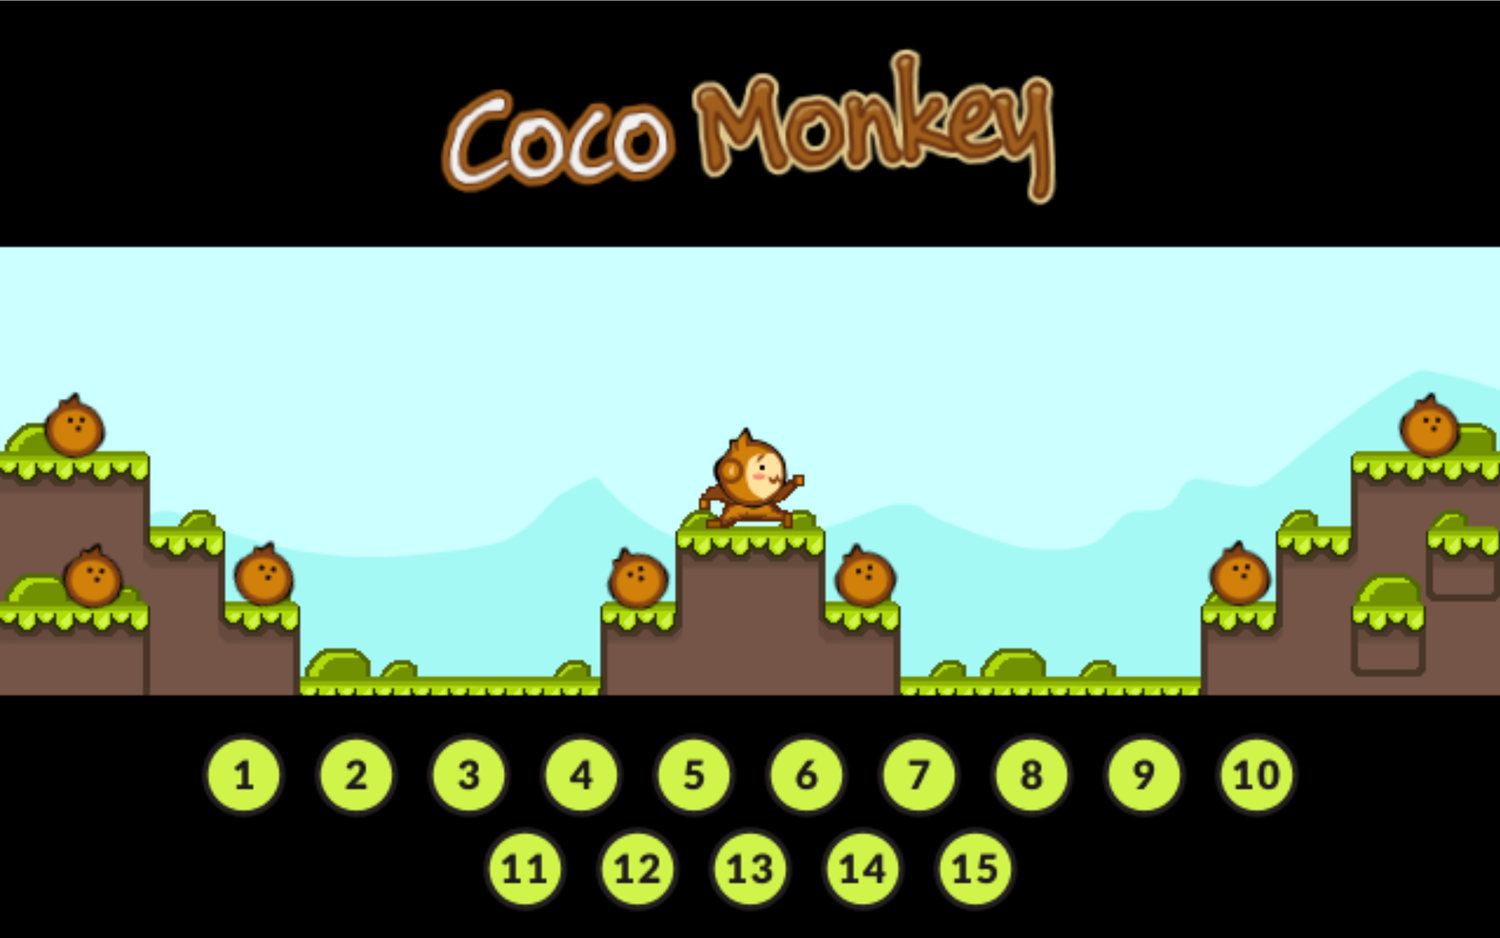 Coco Monkey Game Welcome Screen Screenshot.